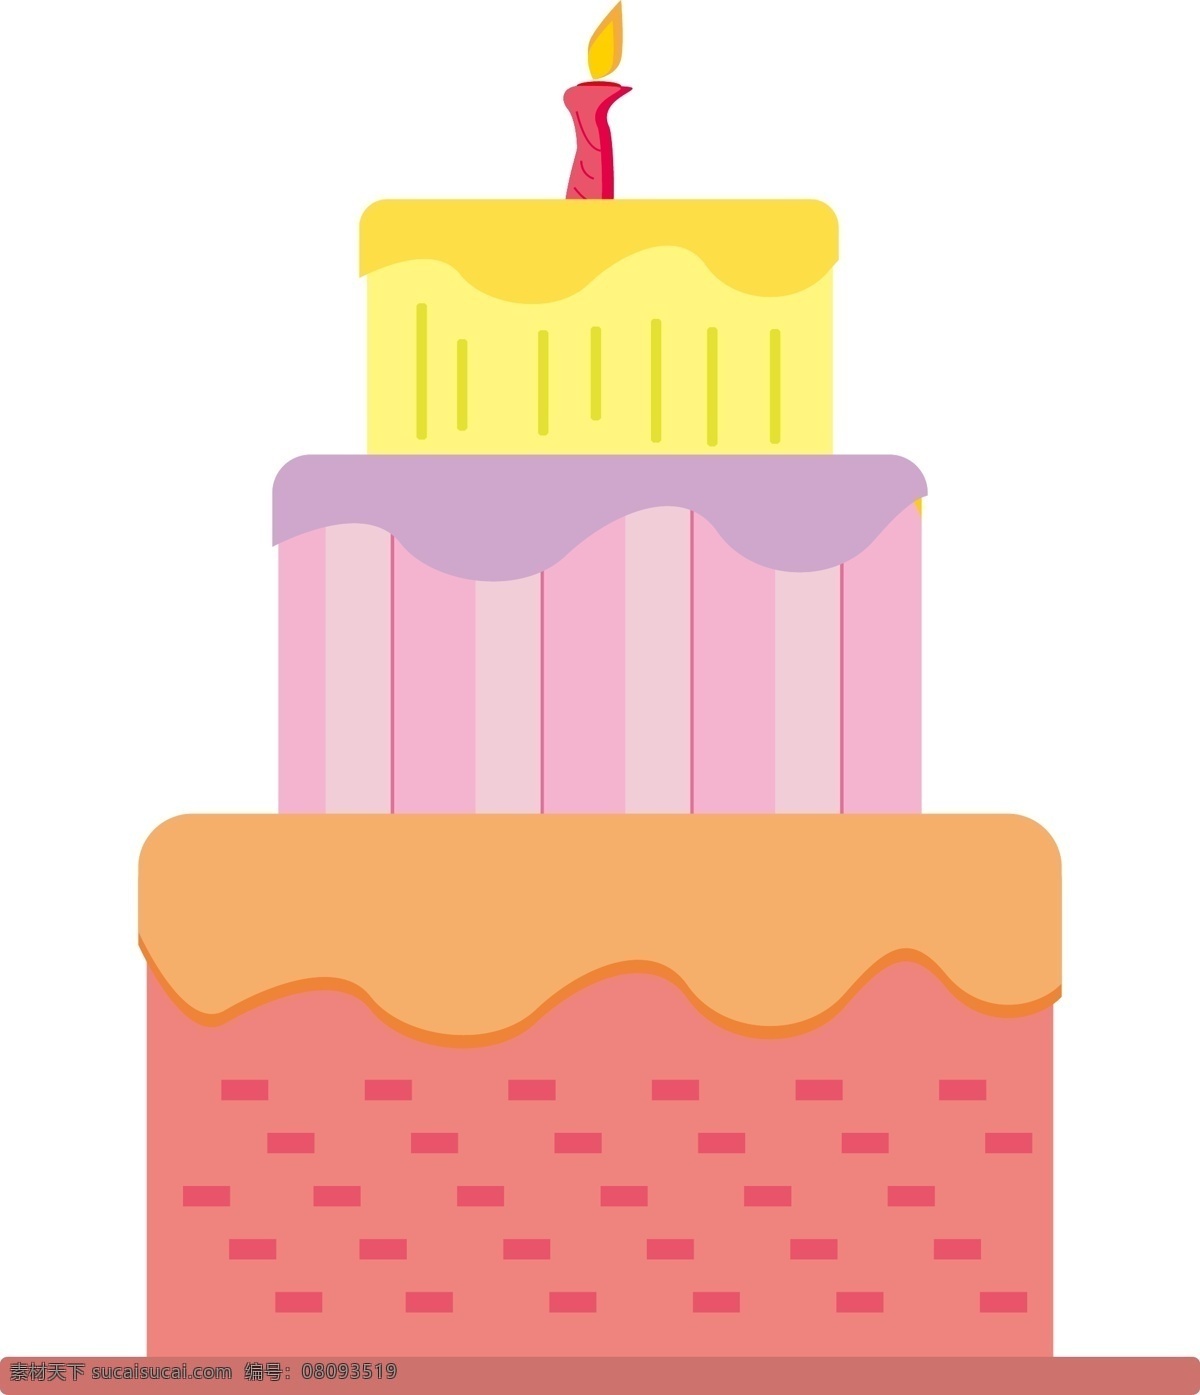 矢量 卡通 生日蛋糕 免 抠 扁平化 三层蛋糕 节日快乐 生日快乐 一岁啦 节日庆祝 节日蛋糕